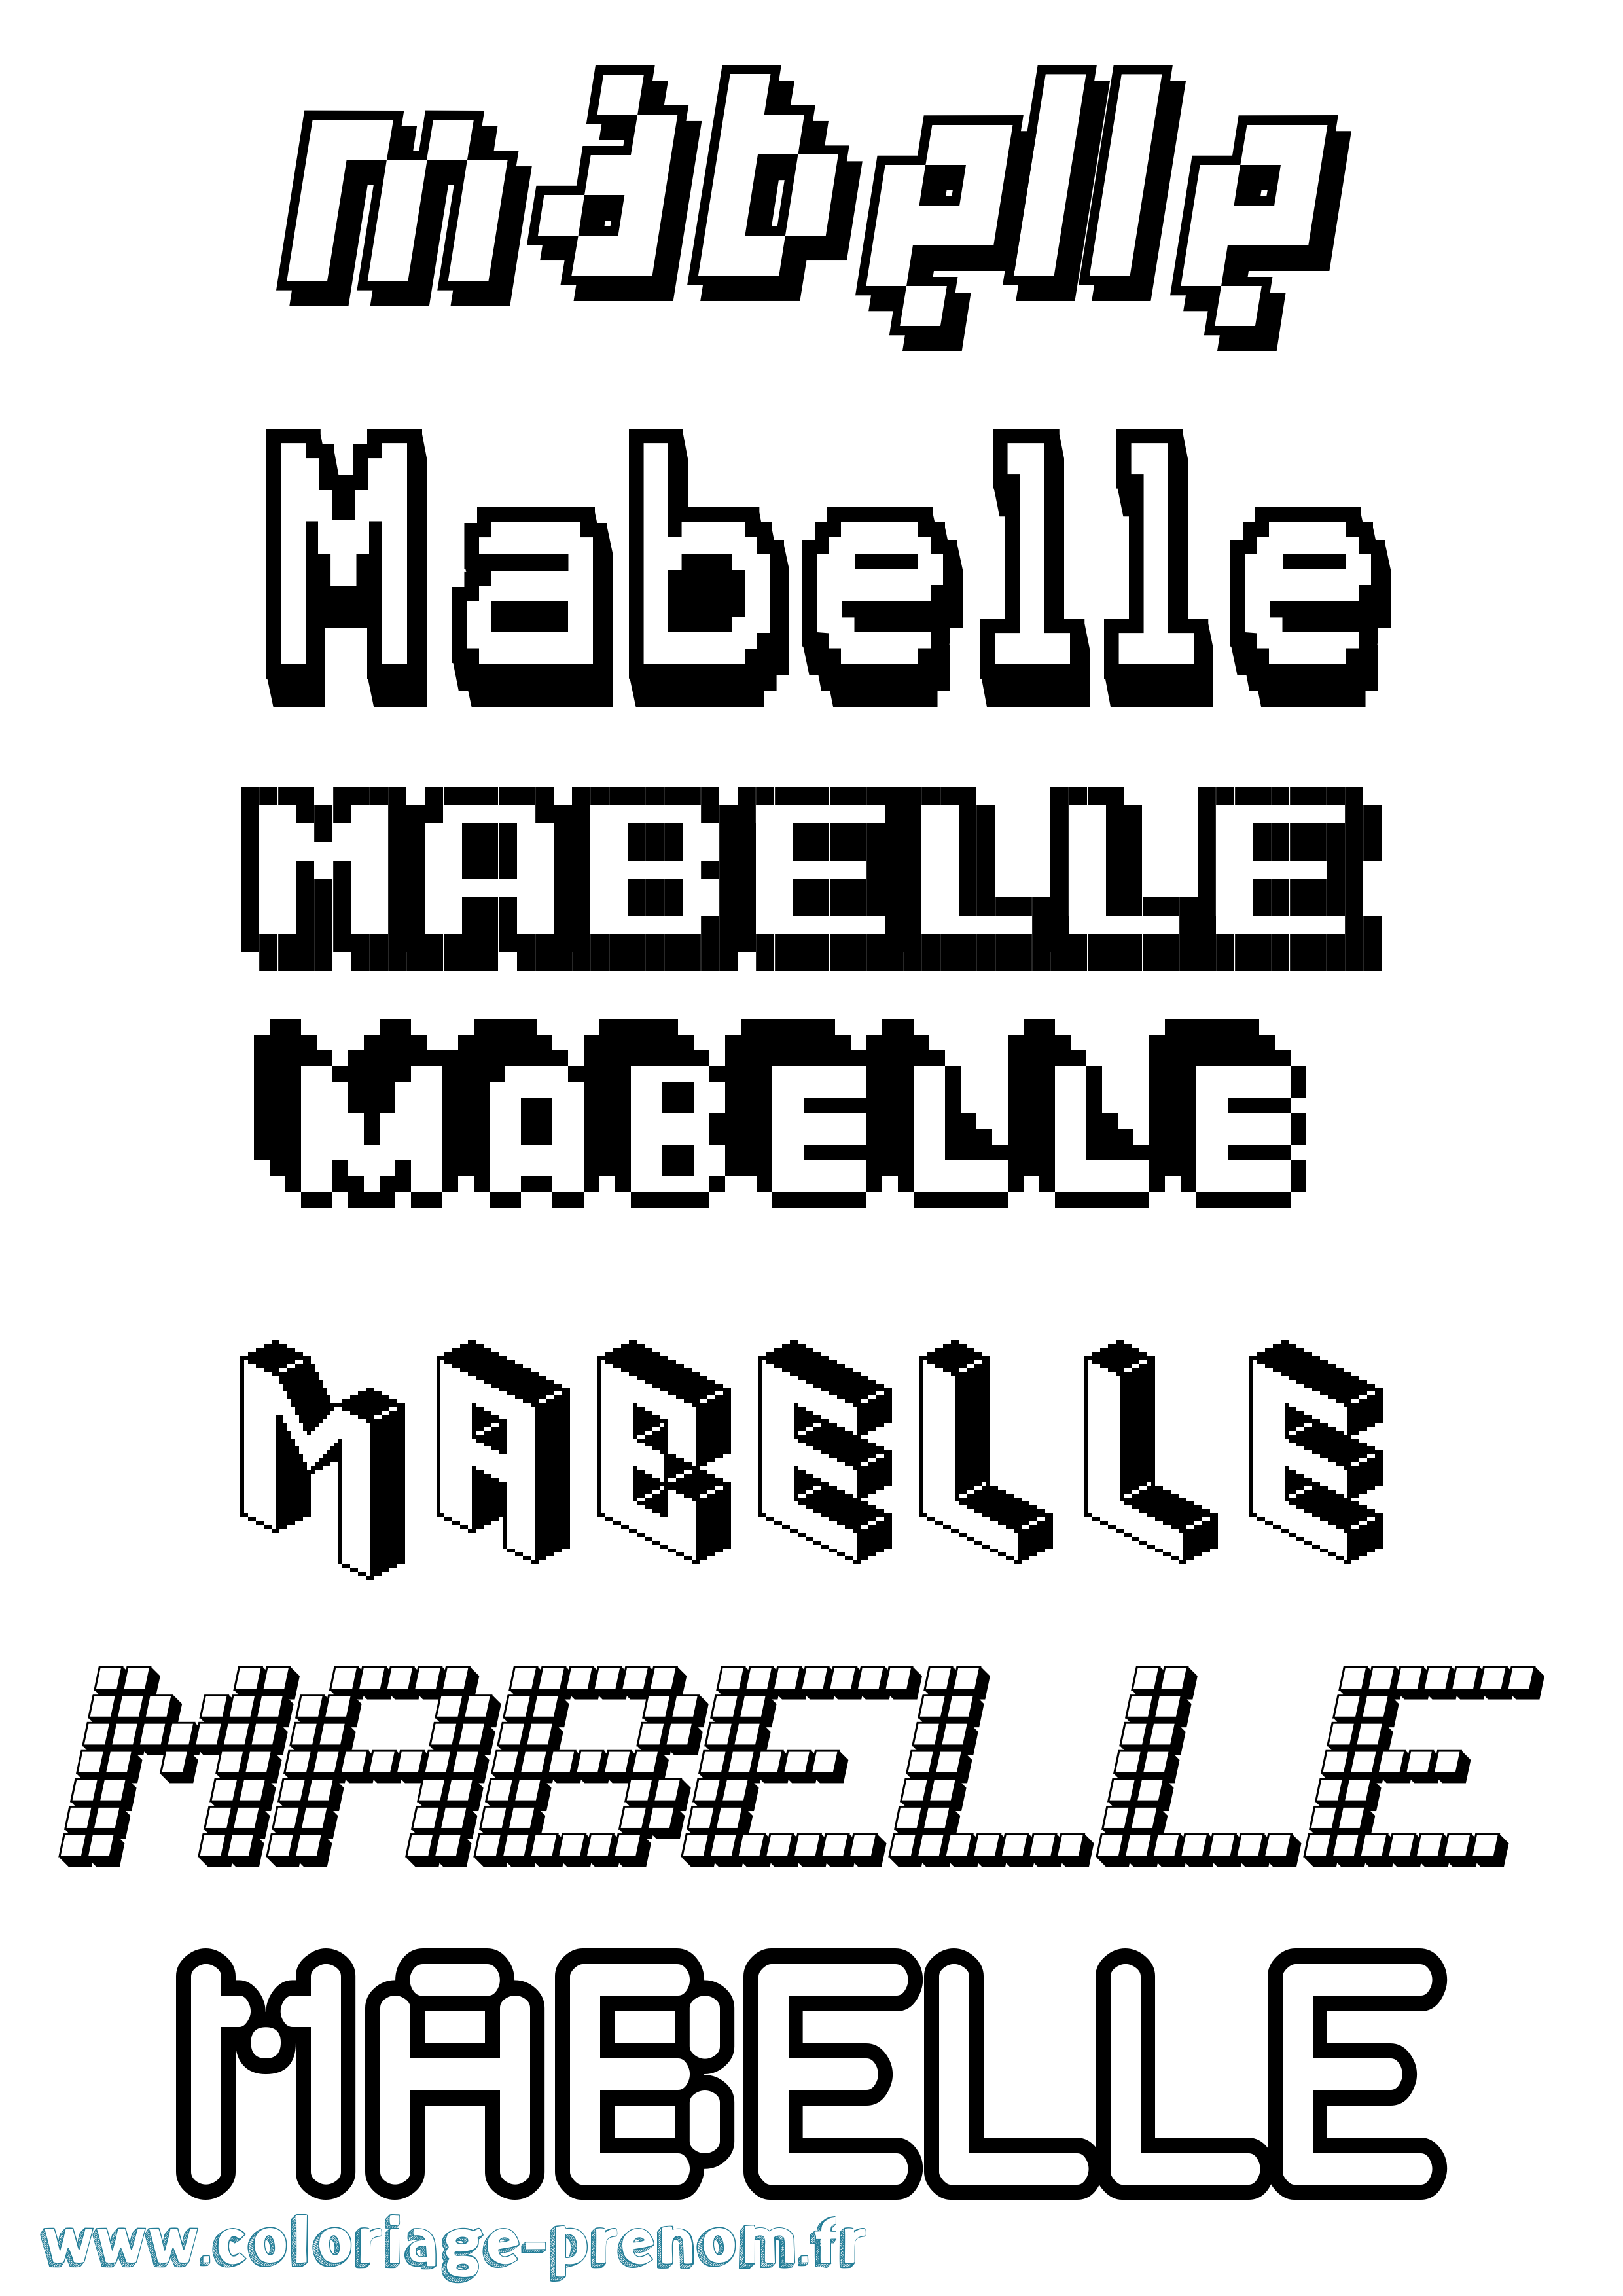 Coloriage prénom Mabelle Pixel